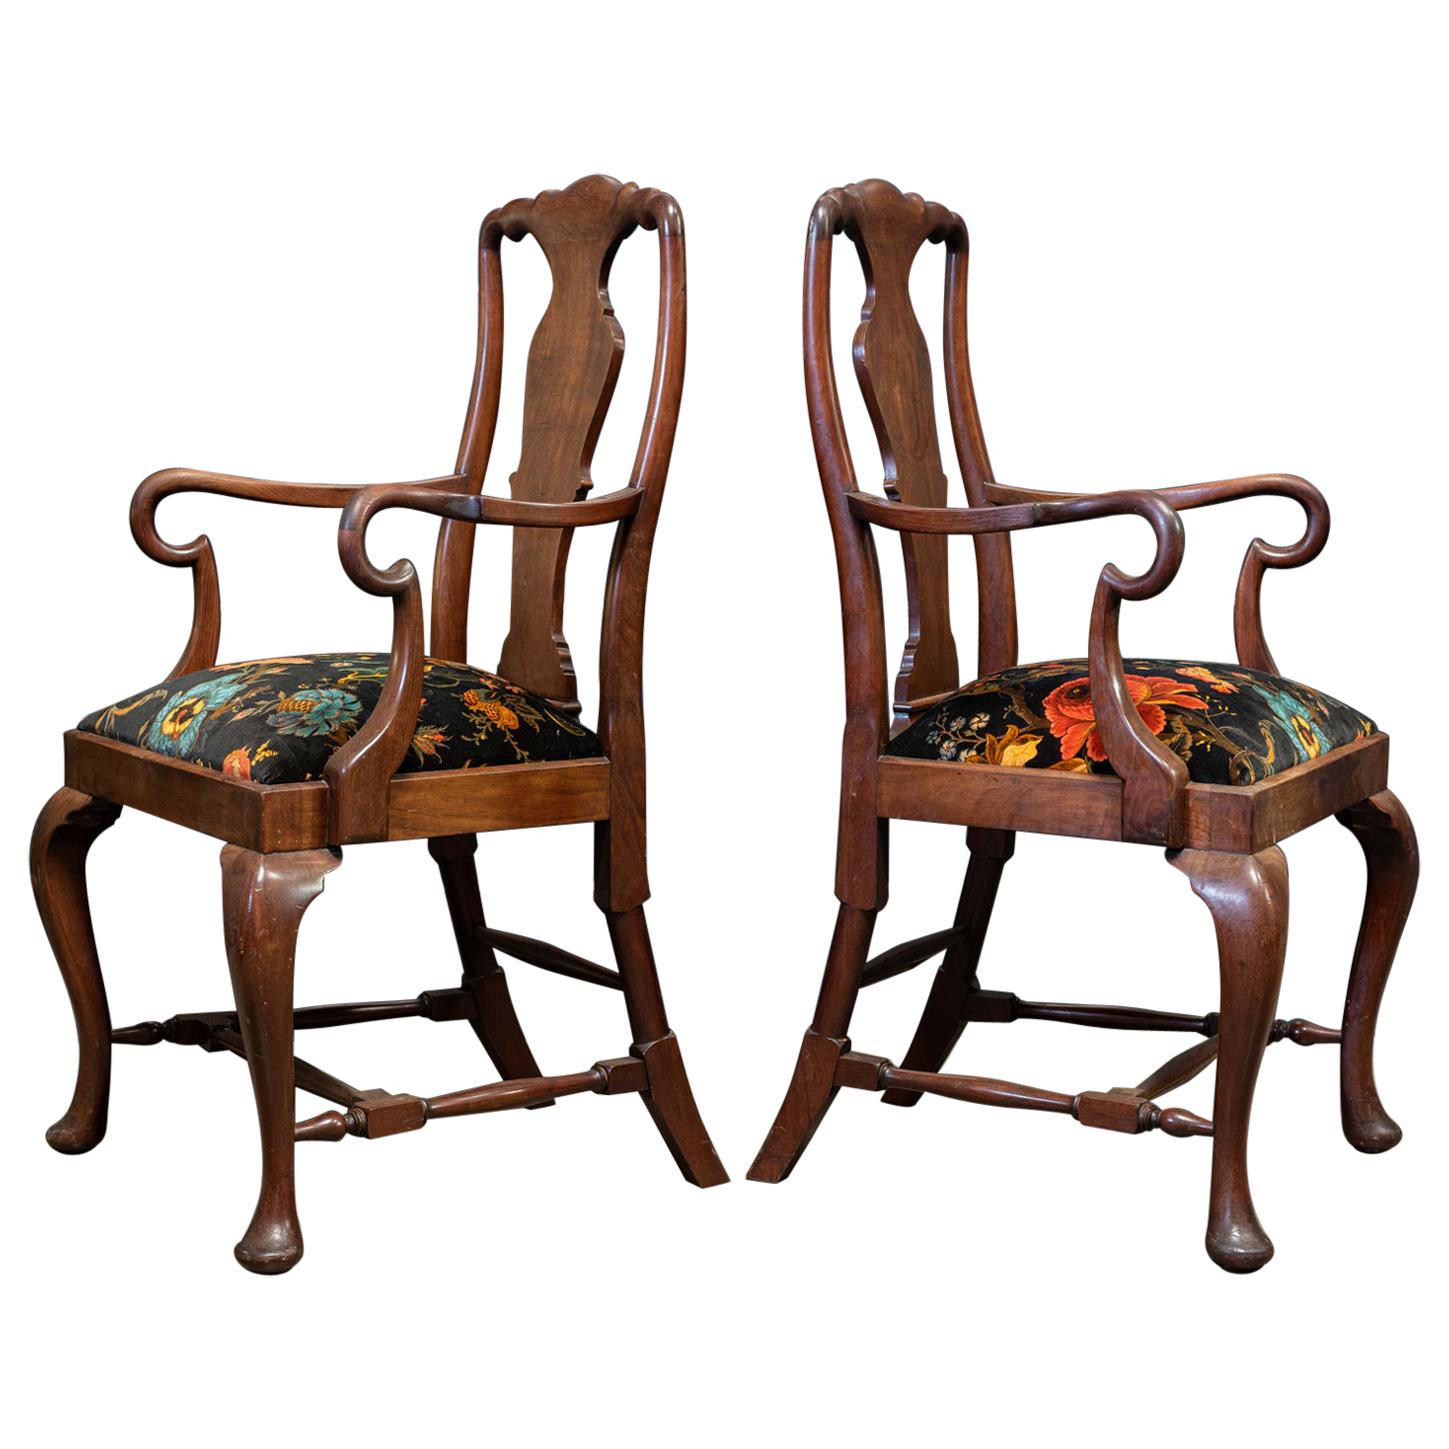 Paire de grandes chaises anglaises du 19ème siècle en acajou sculpté à l'accoudoir, retapissées en vente